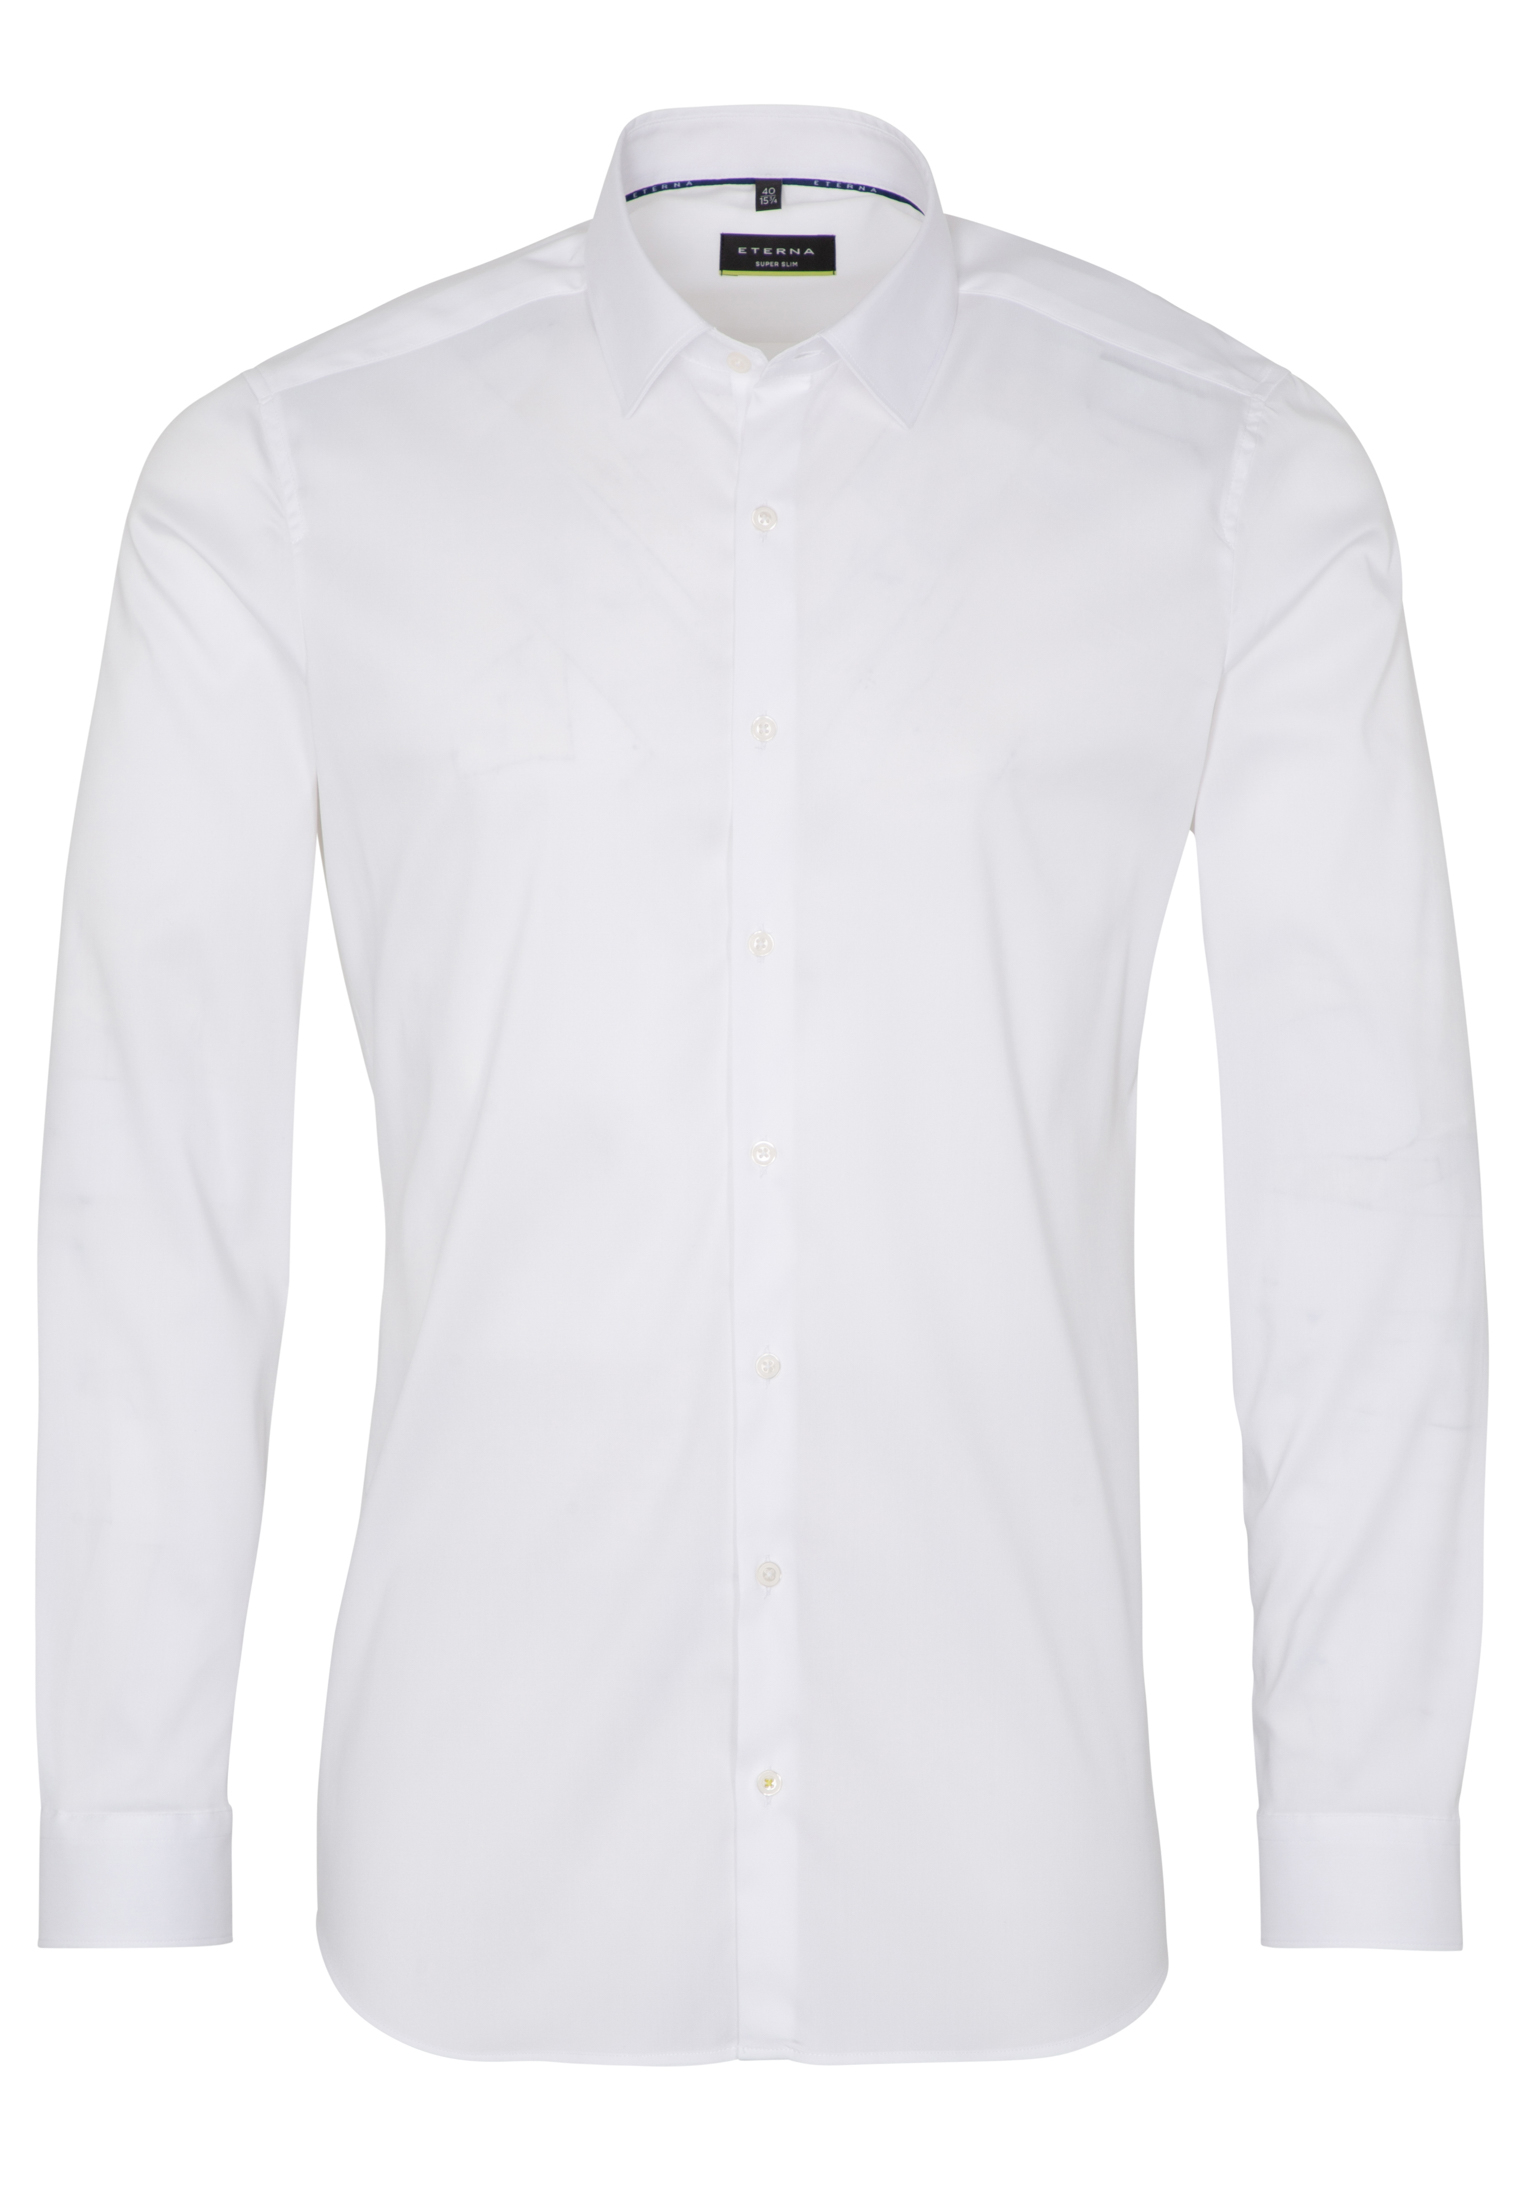 SUPER SLIM Performance Shirt in weiß unifarben